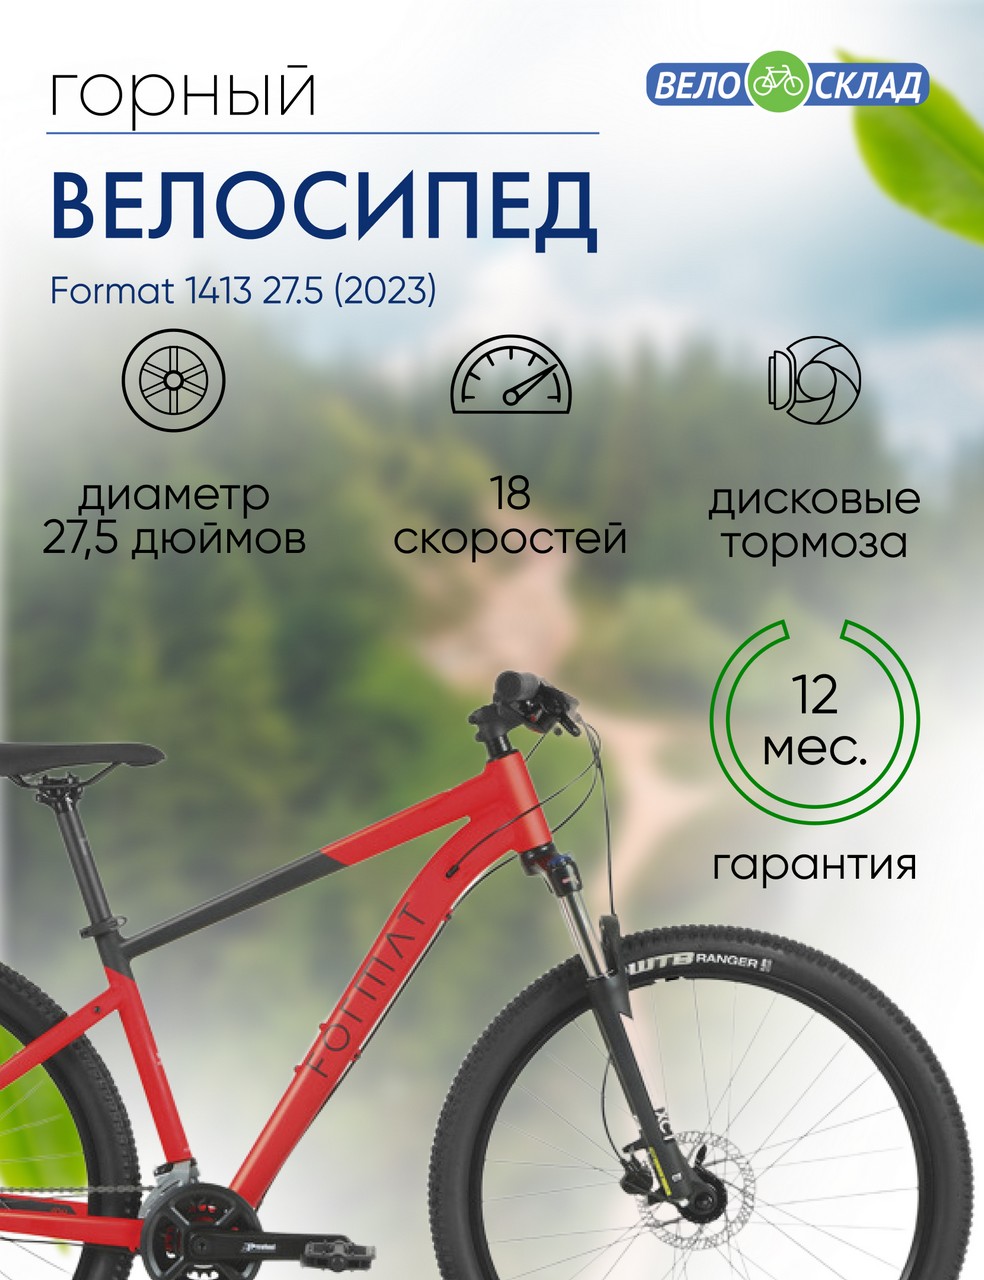 Горный велосипед Format 1413 27.5, год 2023, цвет Красный-Черный, ростовка 17